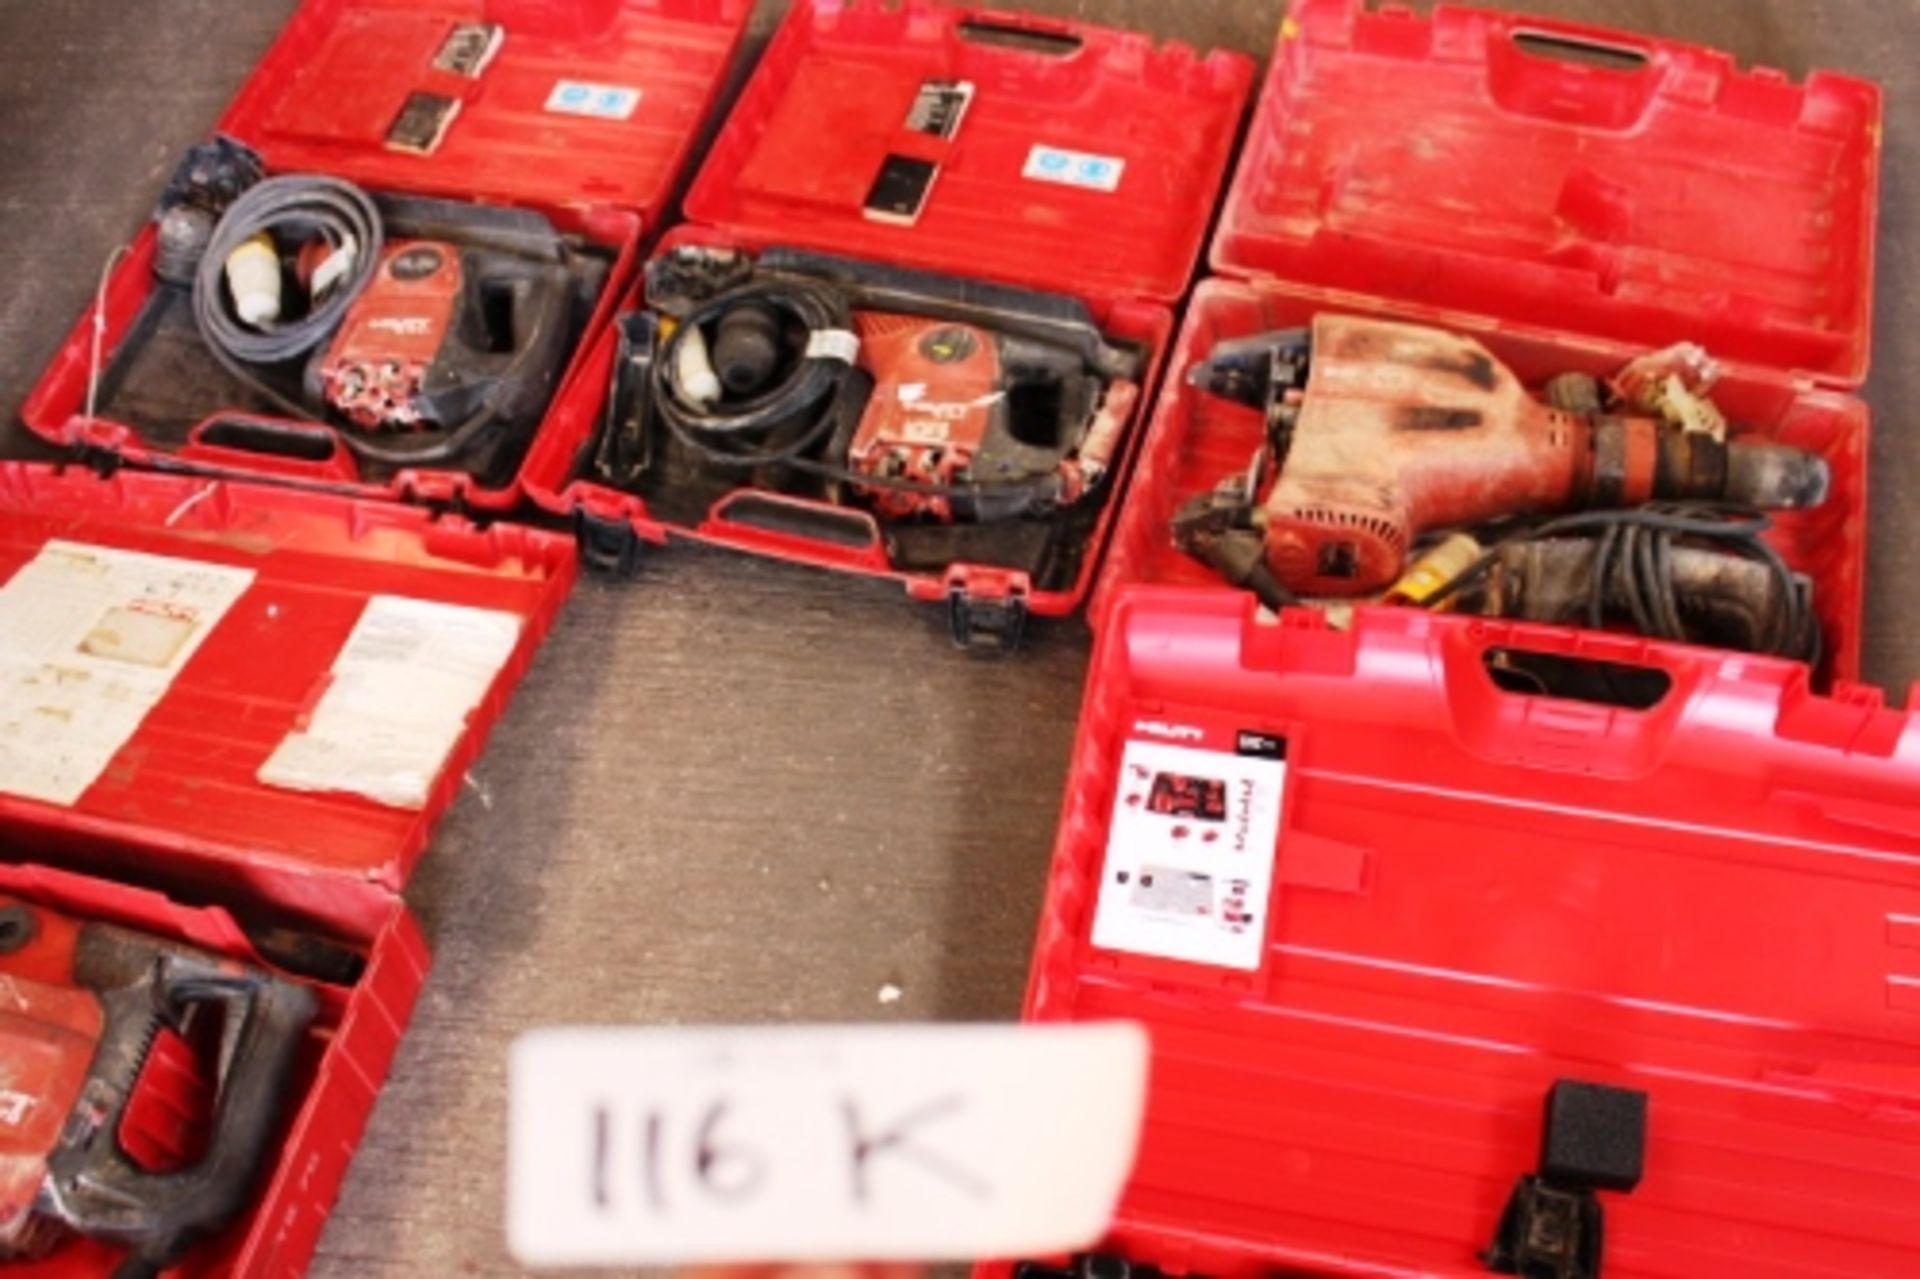 1 x Hilti TE60 ATC, cased,1 x Hilti TE763 breaker, 110V, cased 1 x Hilti TE1000 AVR cased,Hilti - Image 8 of 8